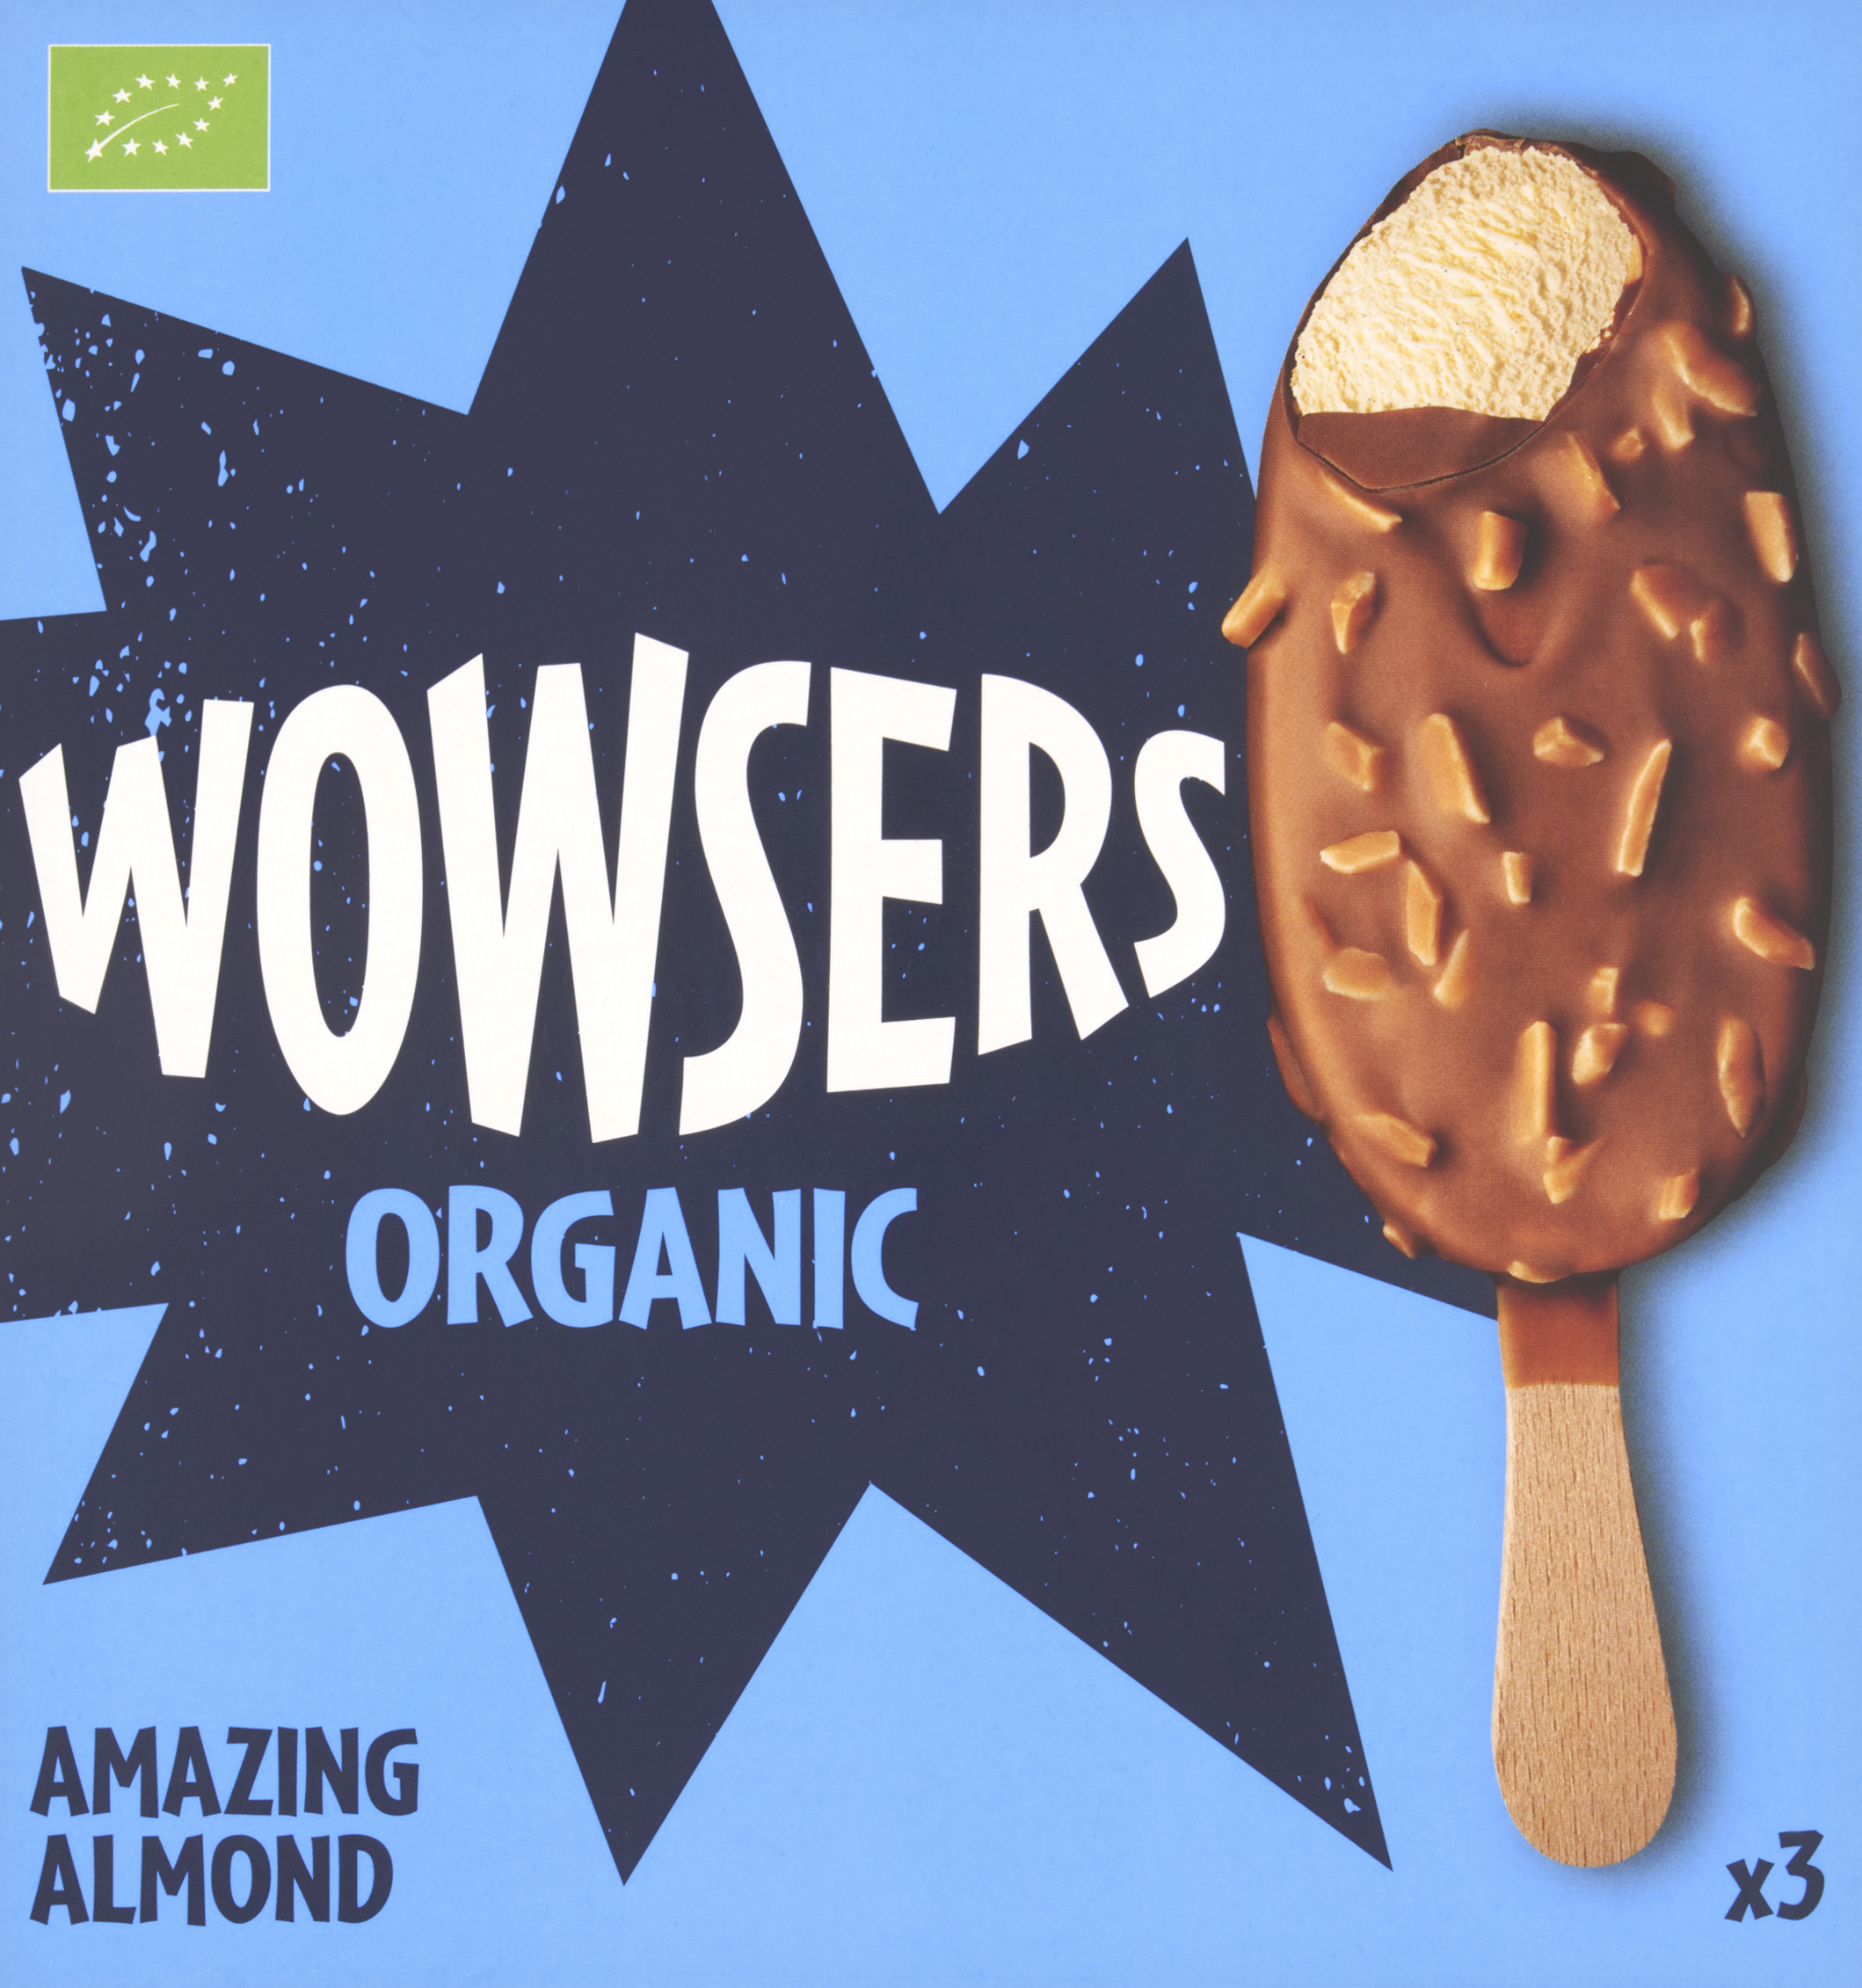 Wowsers Organic